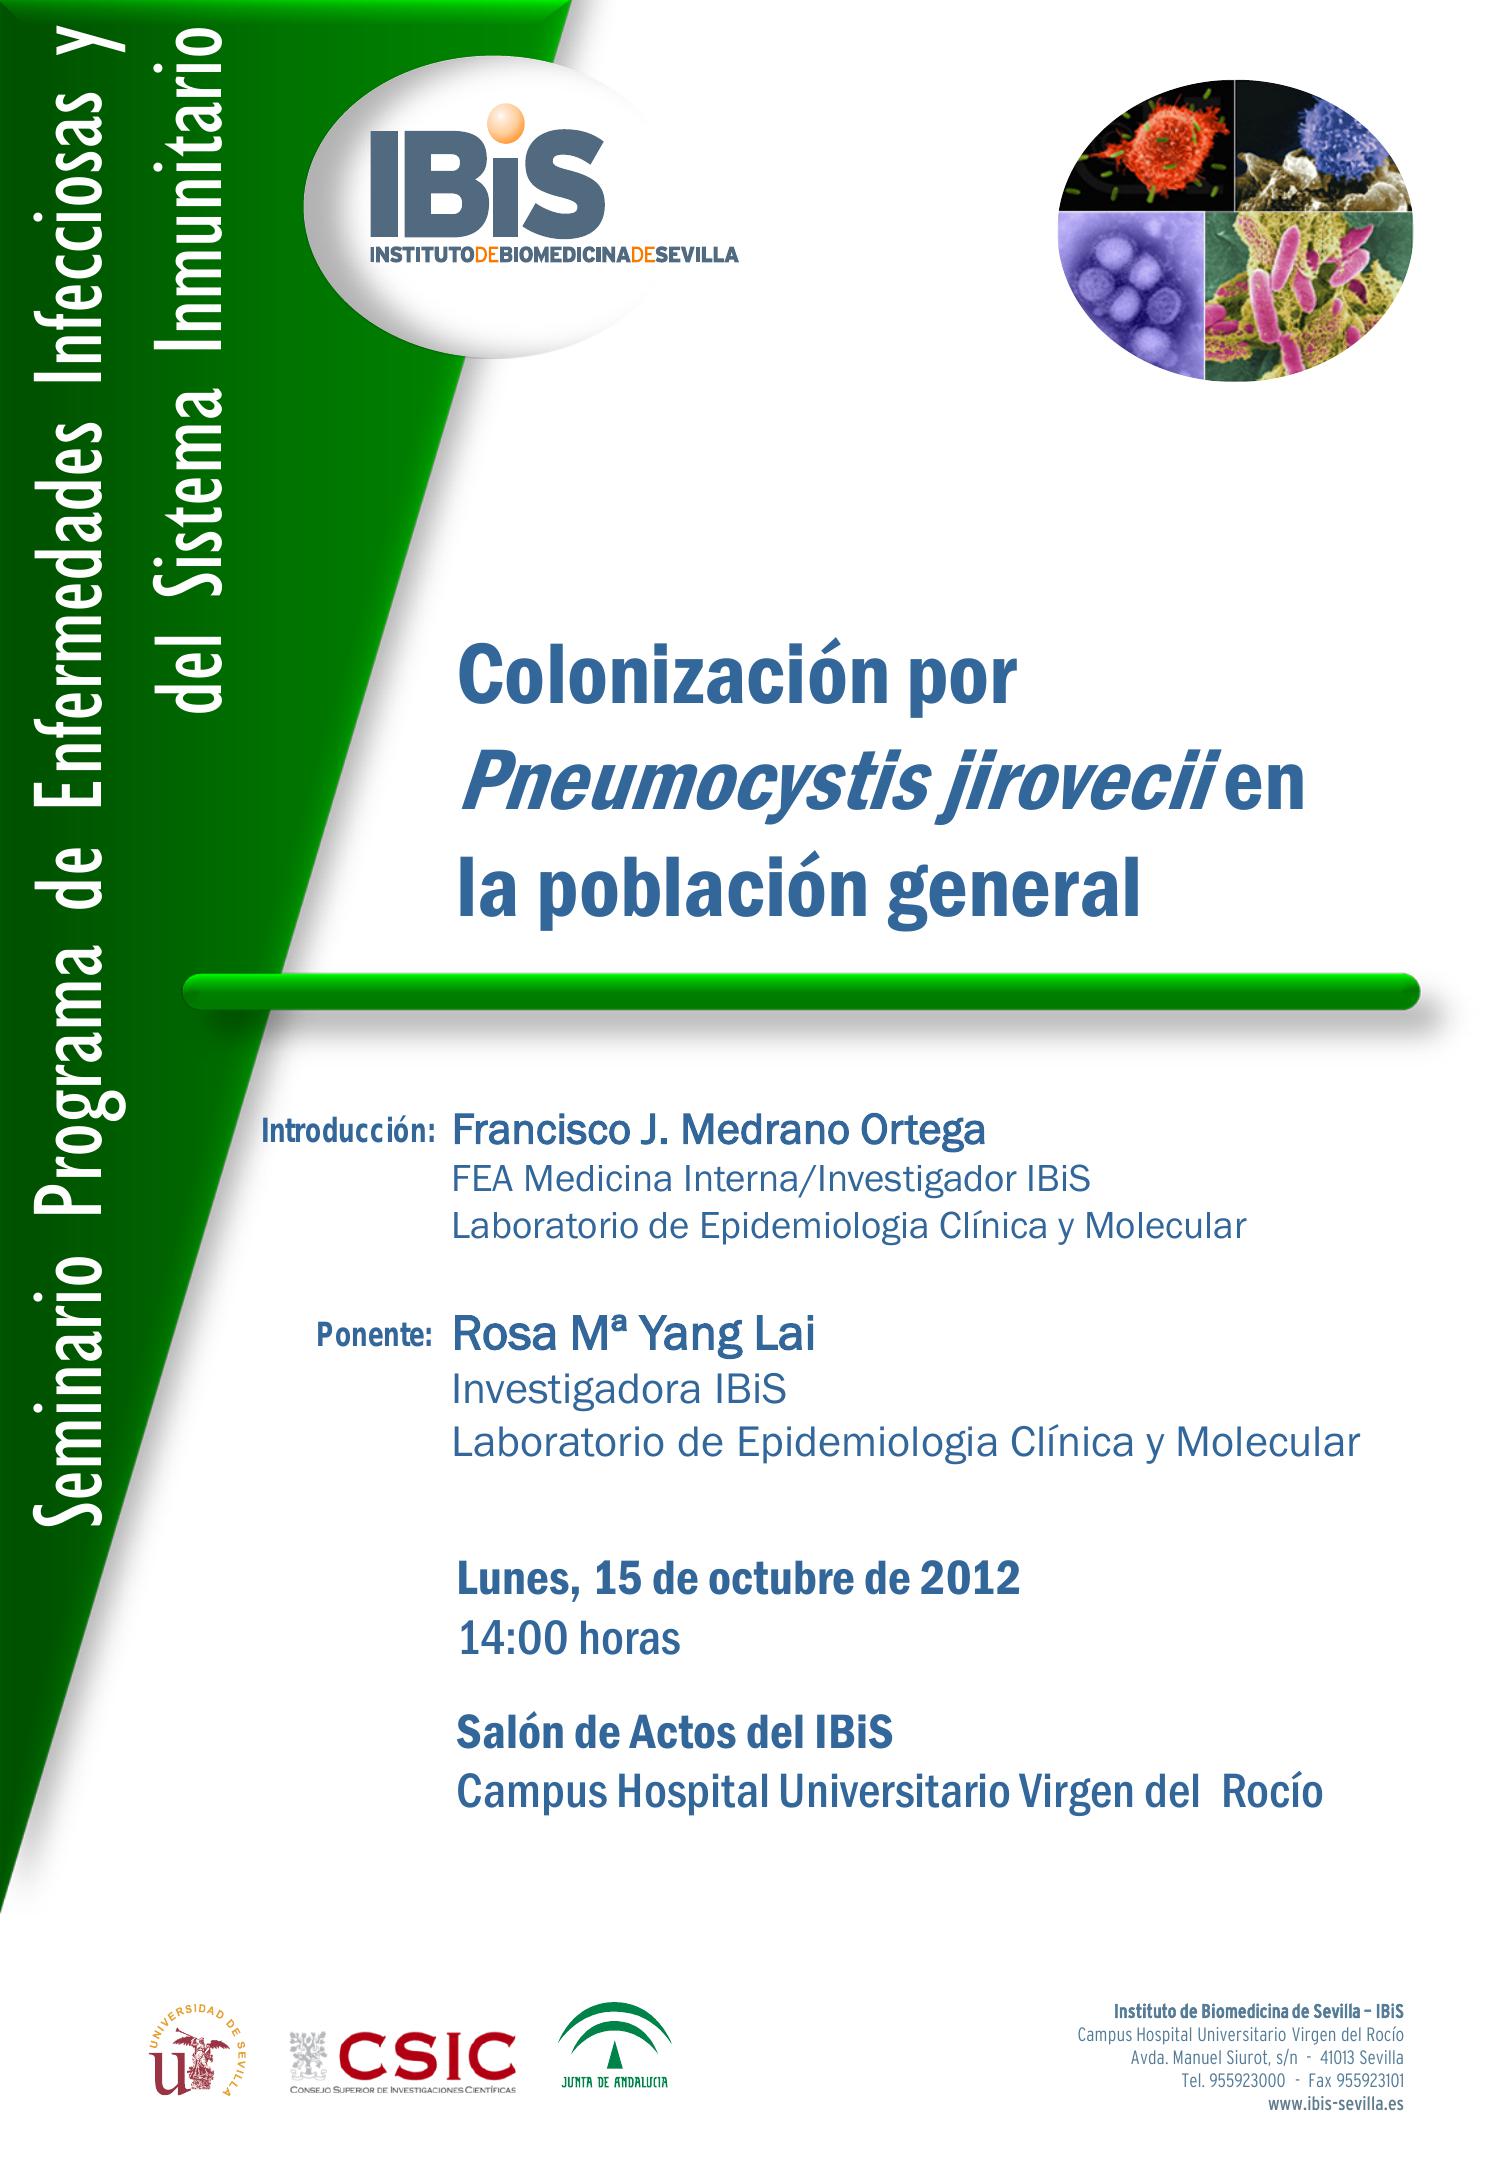 Poster: Colonización por Pneumocystis jirovecii en la población general.